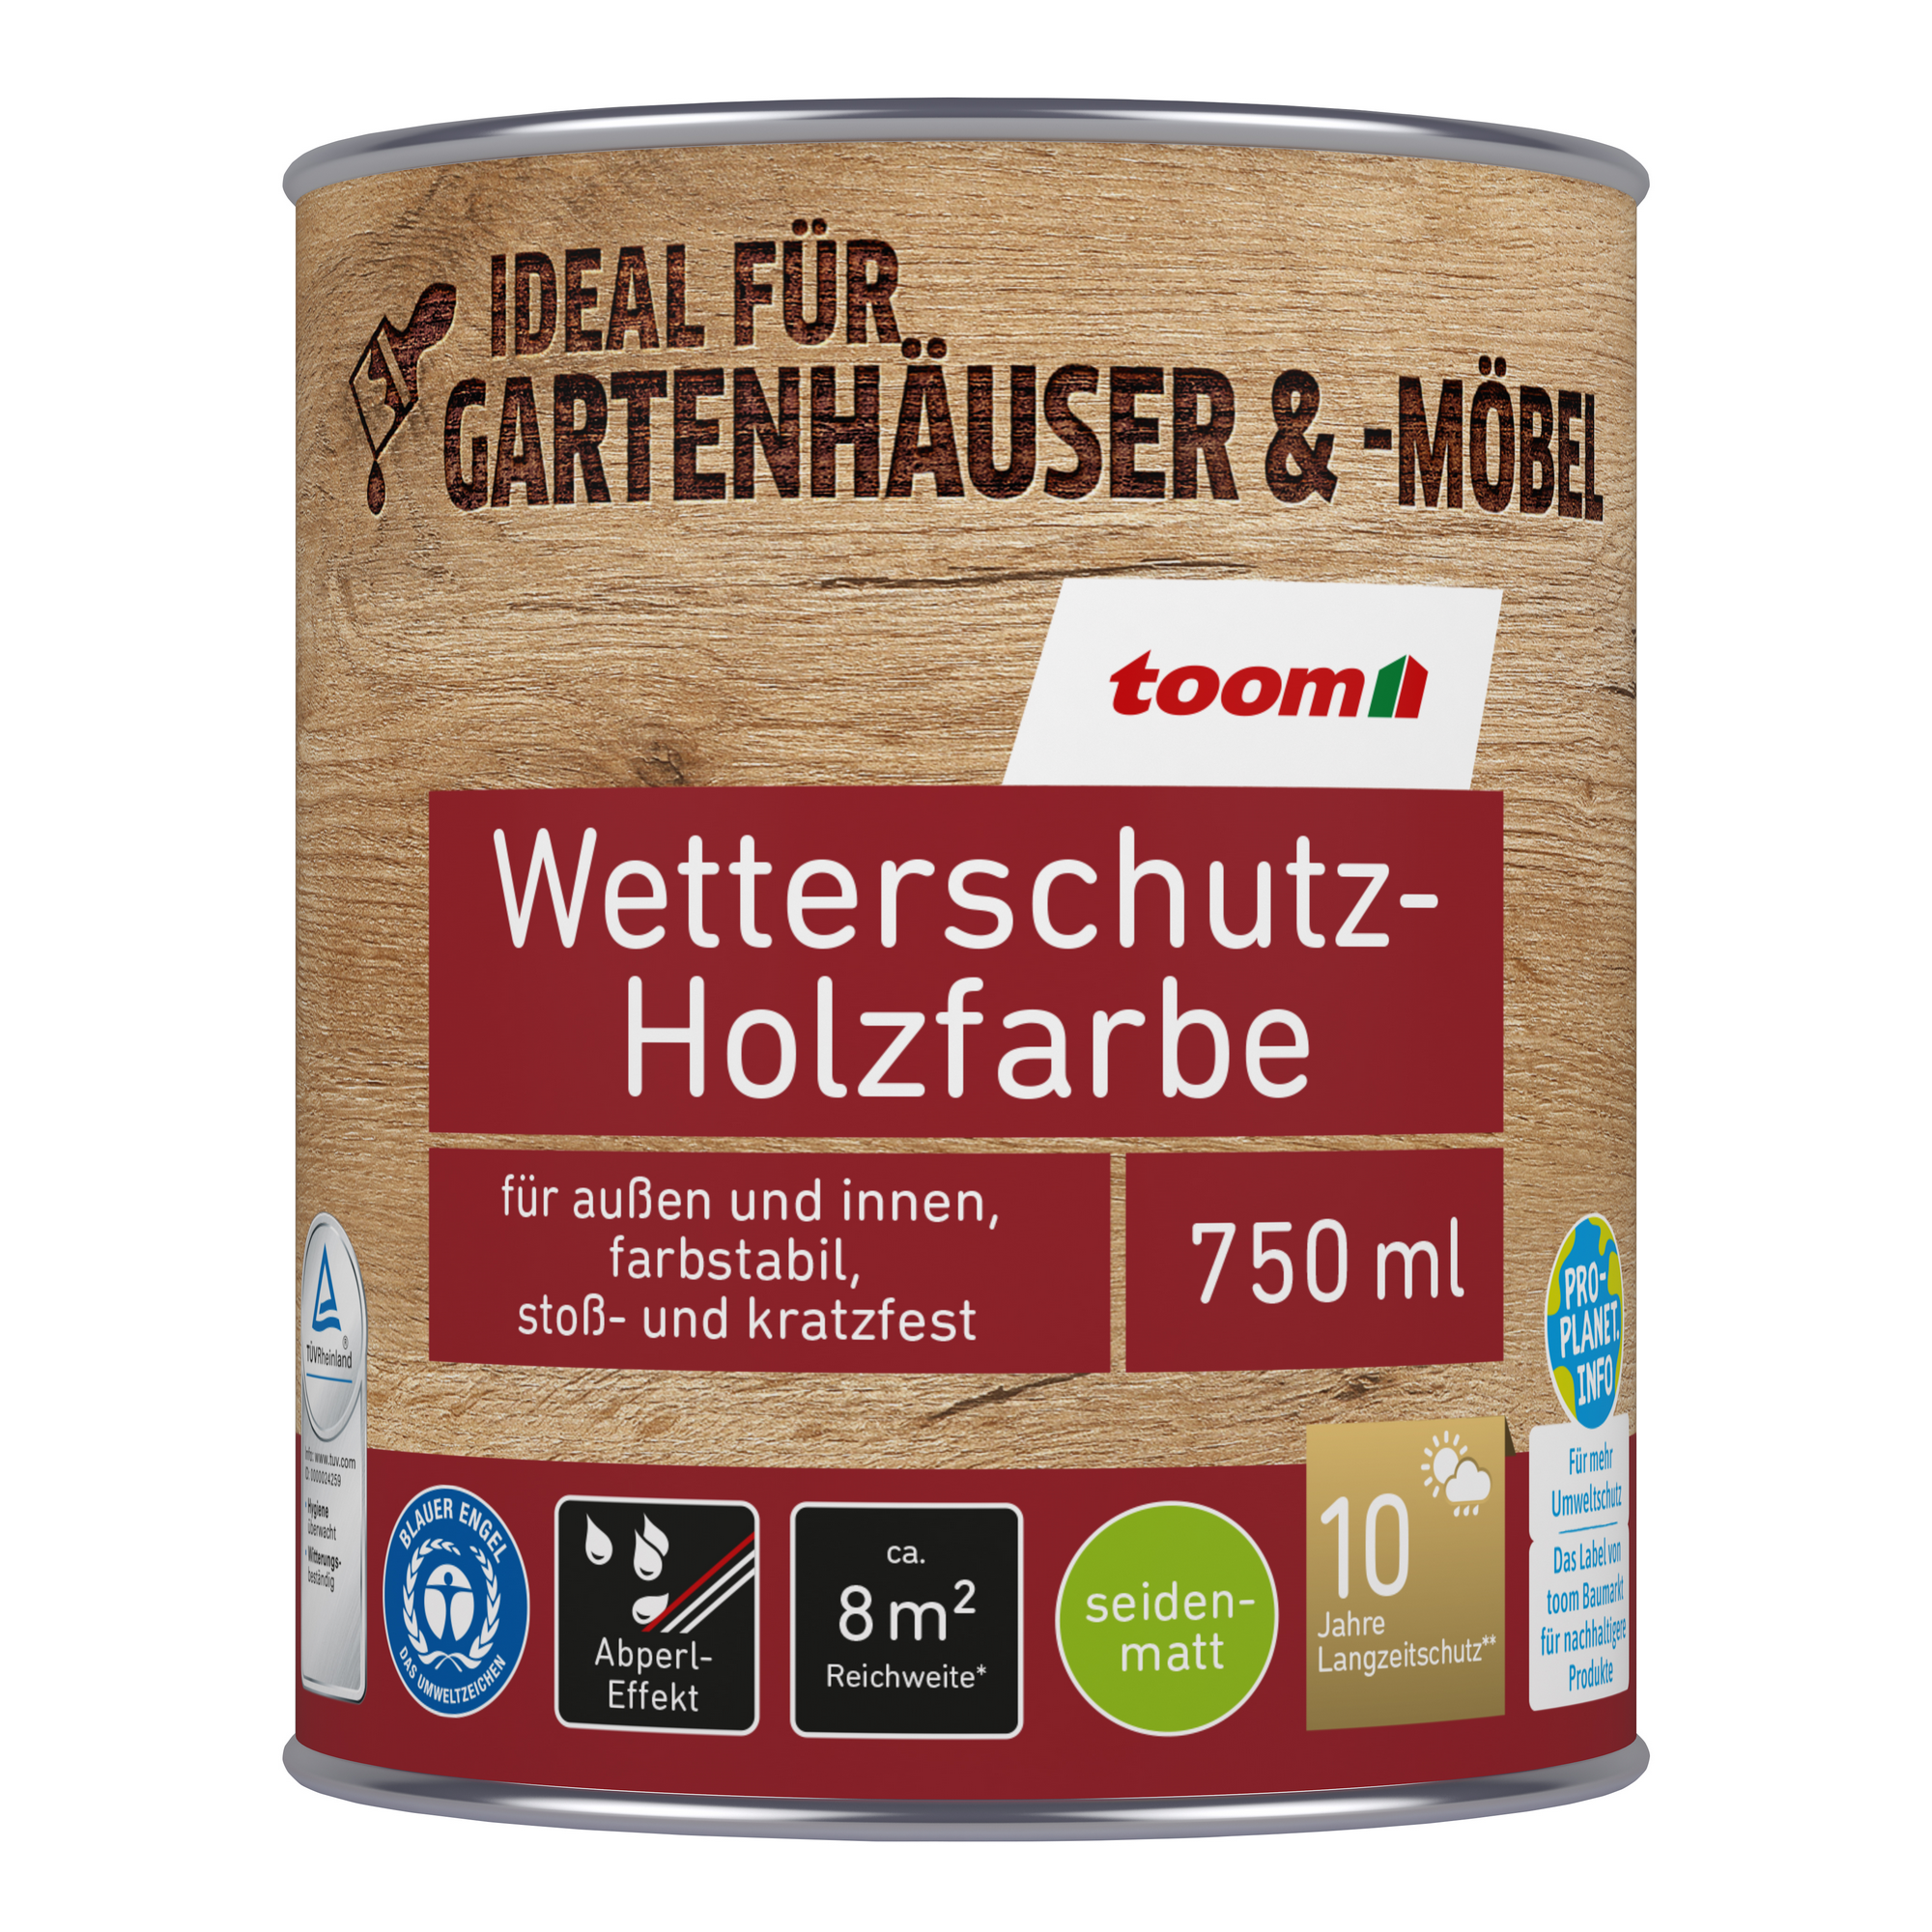 Wetterschutz-Holzfarbe weiß 750 ml + product picture